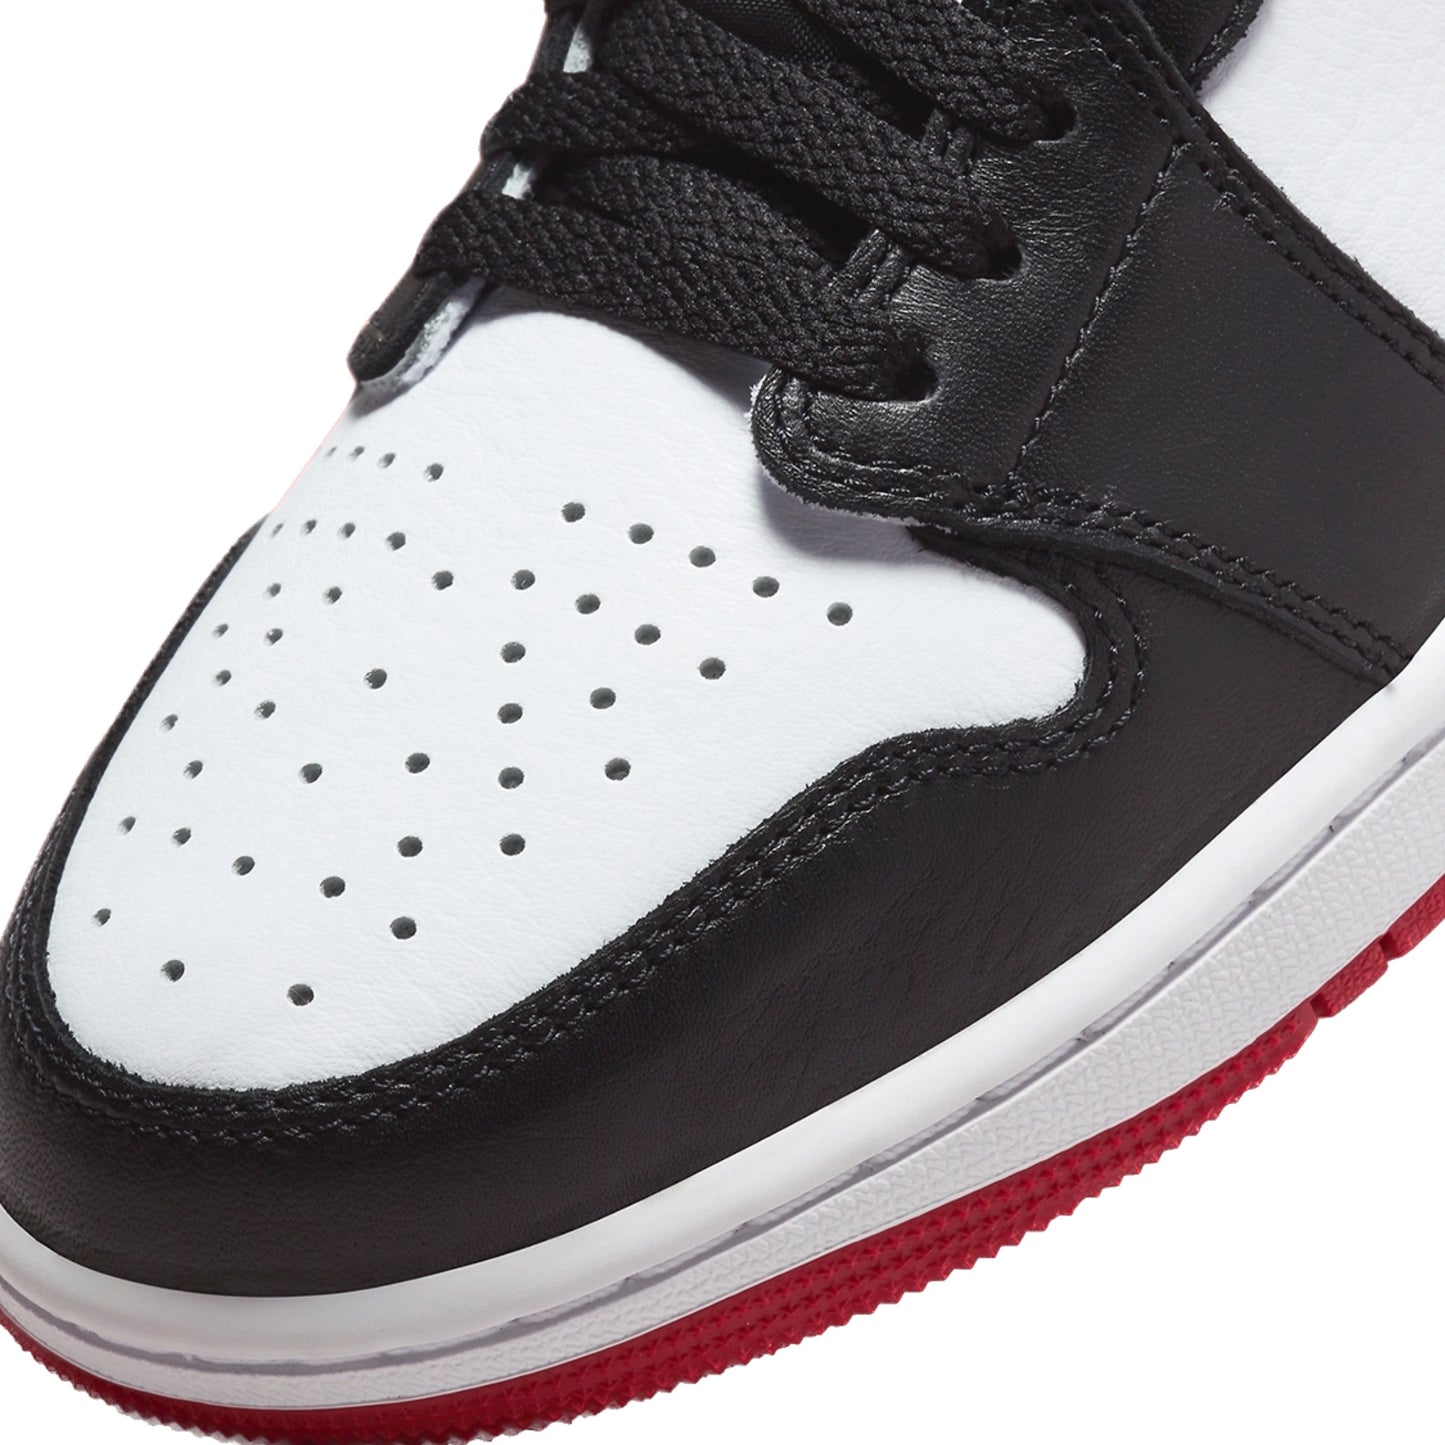 Air Jordan 1 Low GS OG Red Black Toe White Varsity Red Black